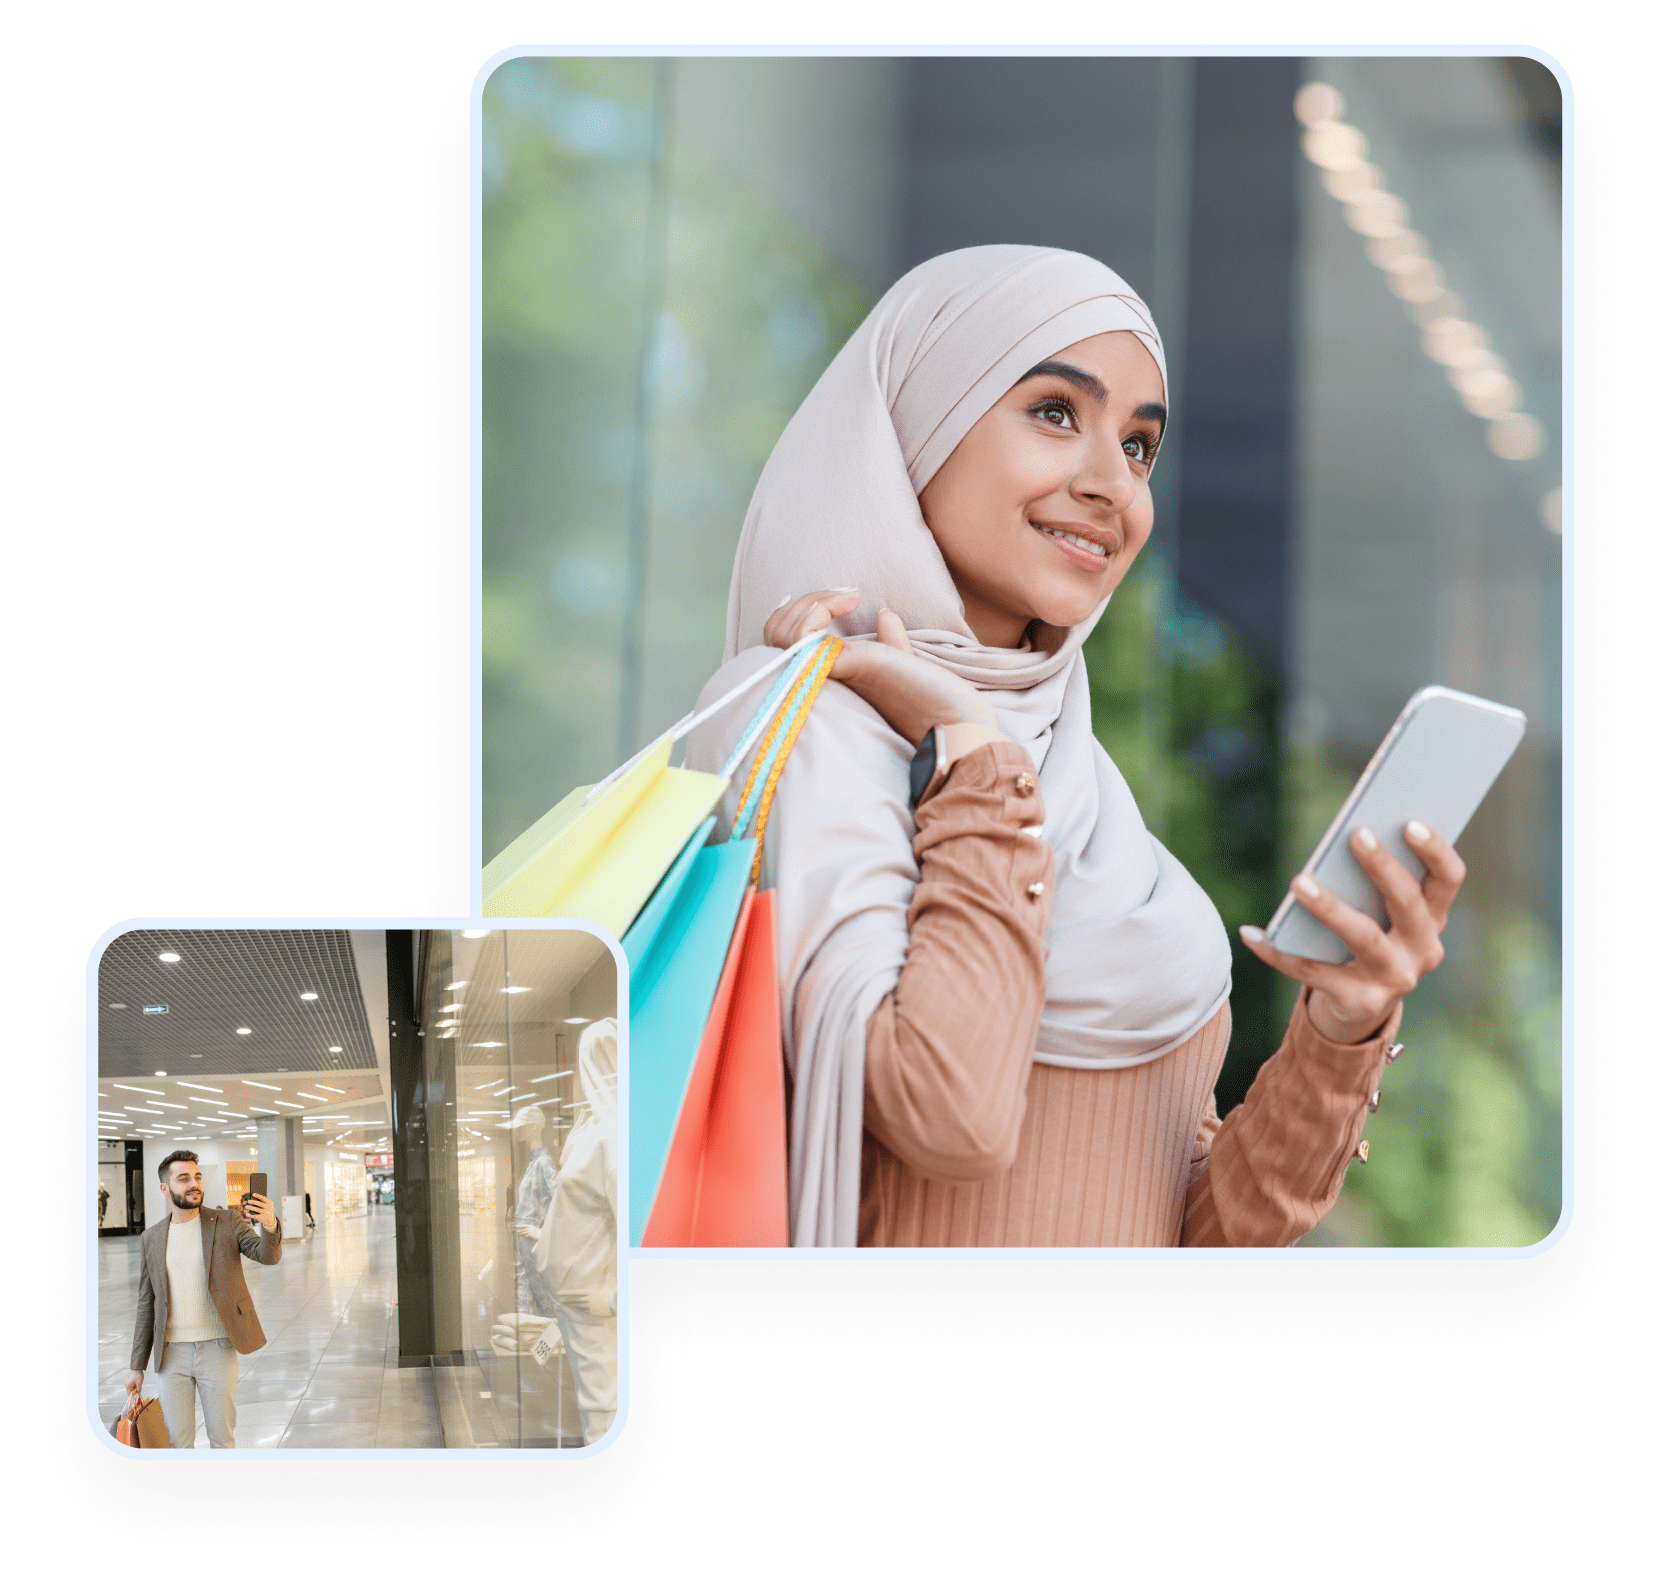 Build customer loyalty reward UAE